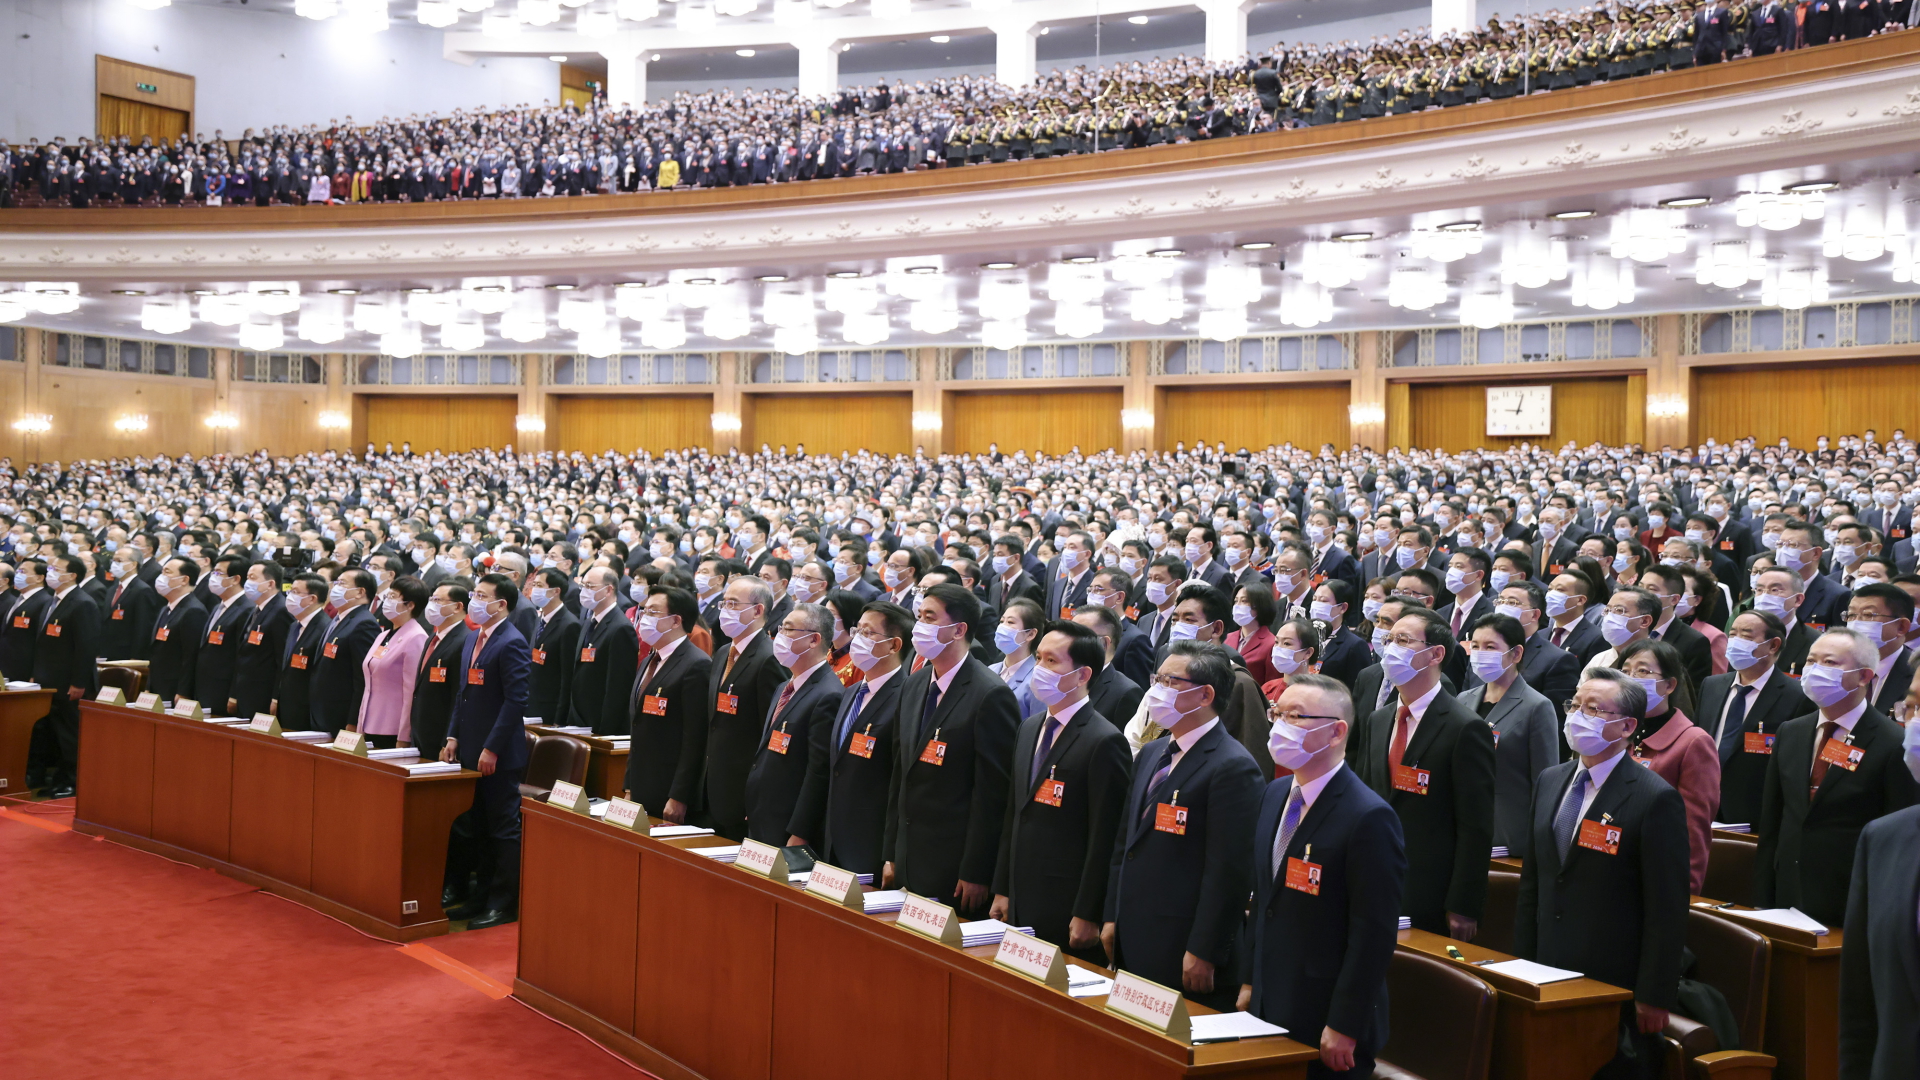 Teilnehmer stehen bei der Eröffnungssitzung des 13. Nationalen Volkskongresses in Peking | dpa